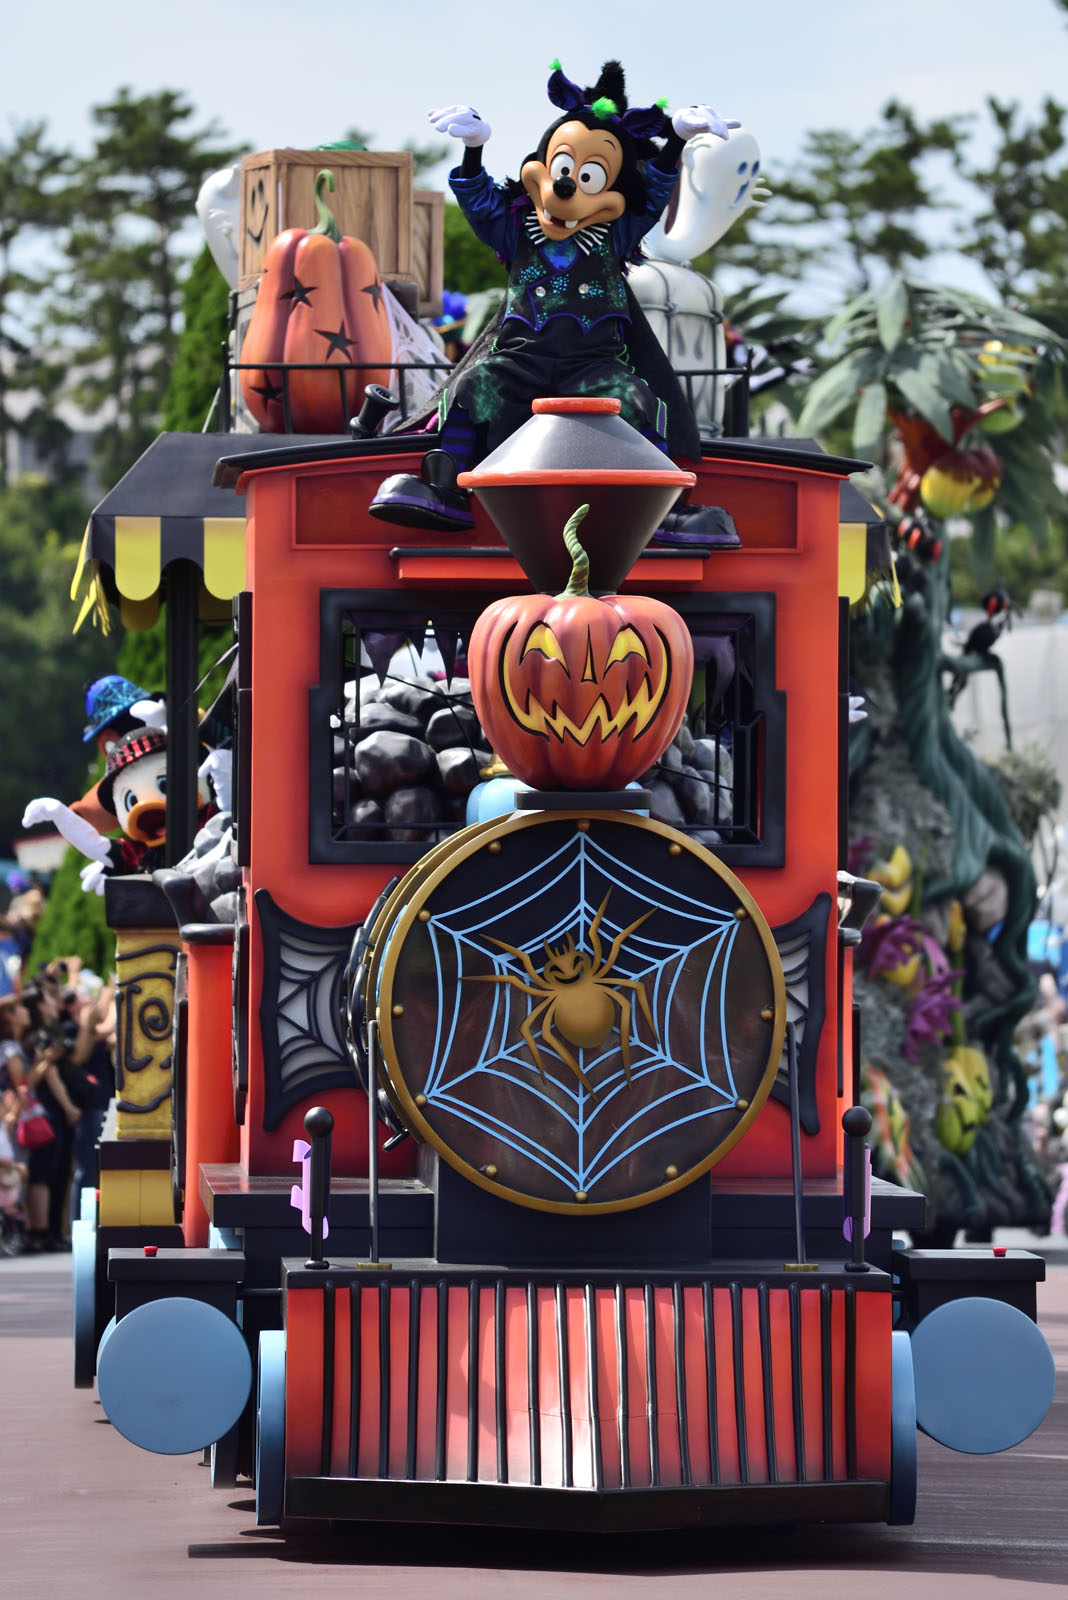 東京ディズニーランド スプーキー“Boo!”パレード2018 マックス